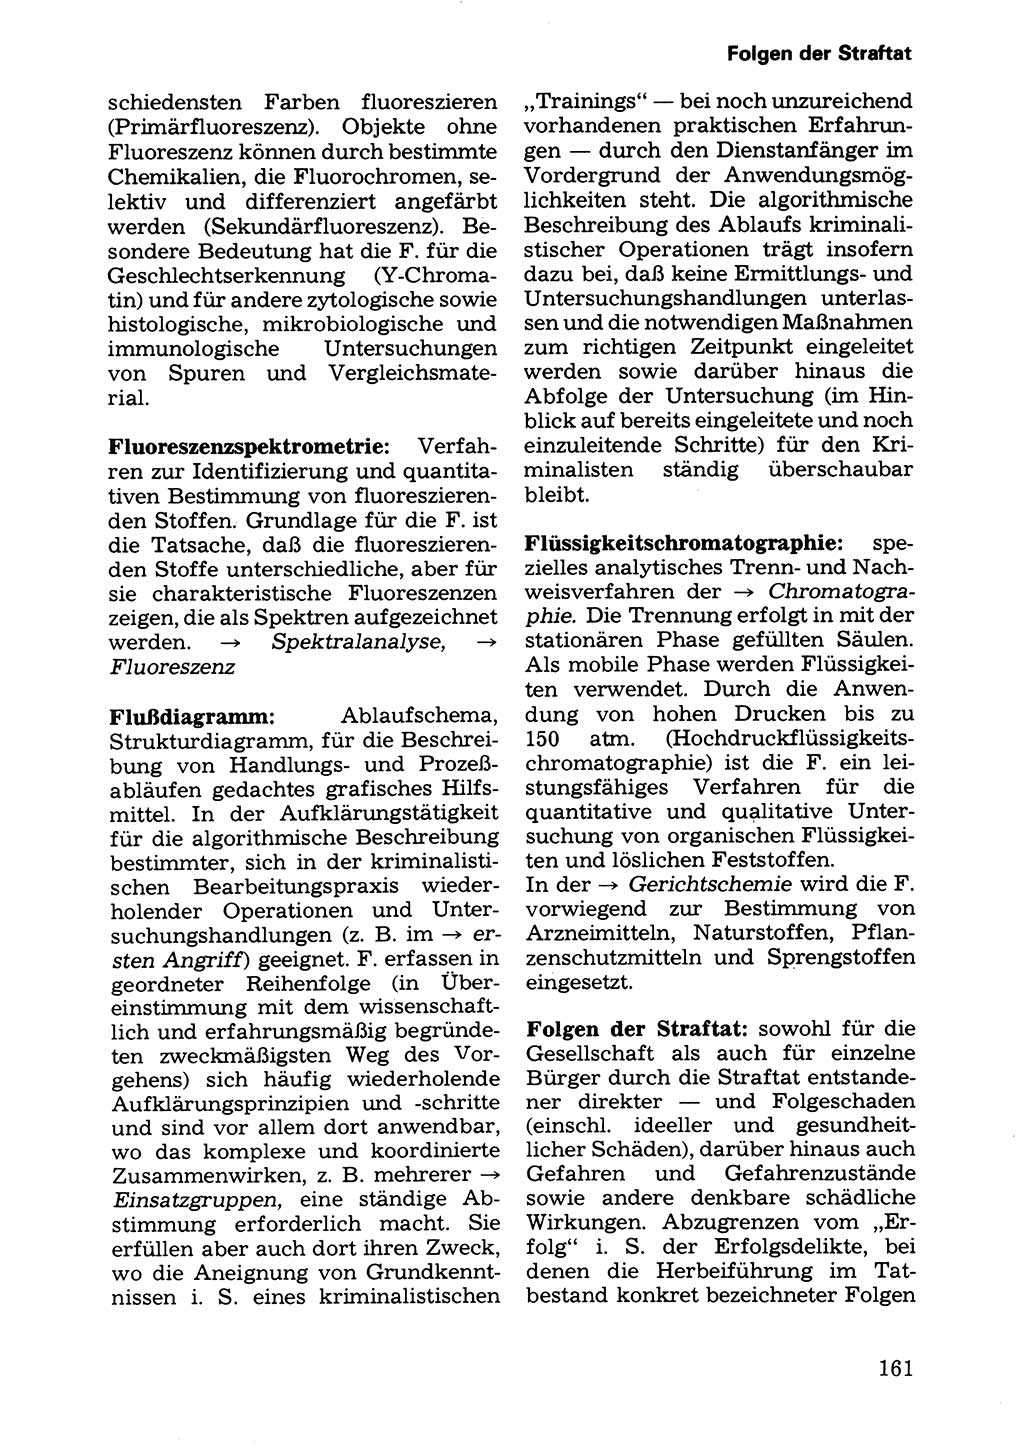 Wörterbuch der sozialistischen Kriminalistik [Deutsche Demokratische Republik (DDR)] 1981, Seite 161 (Wb. soz. Krim. DDR 1981, S. 161)